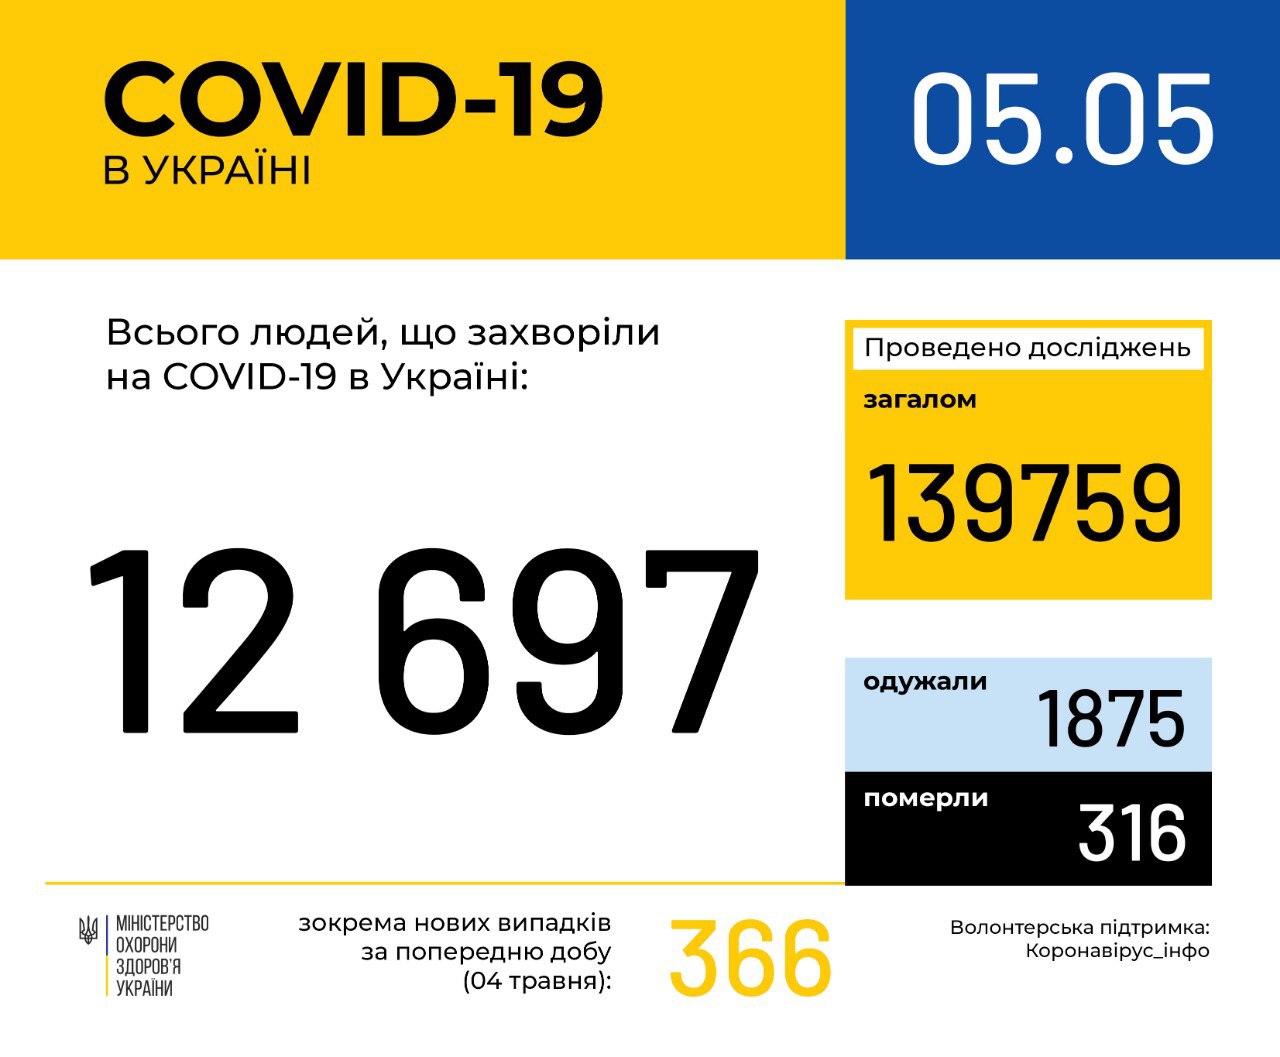 В Україні зафіксовано 12697 випадків коронавірусної хвороби COVID-19, - МОЗ